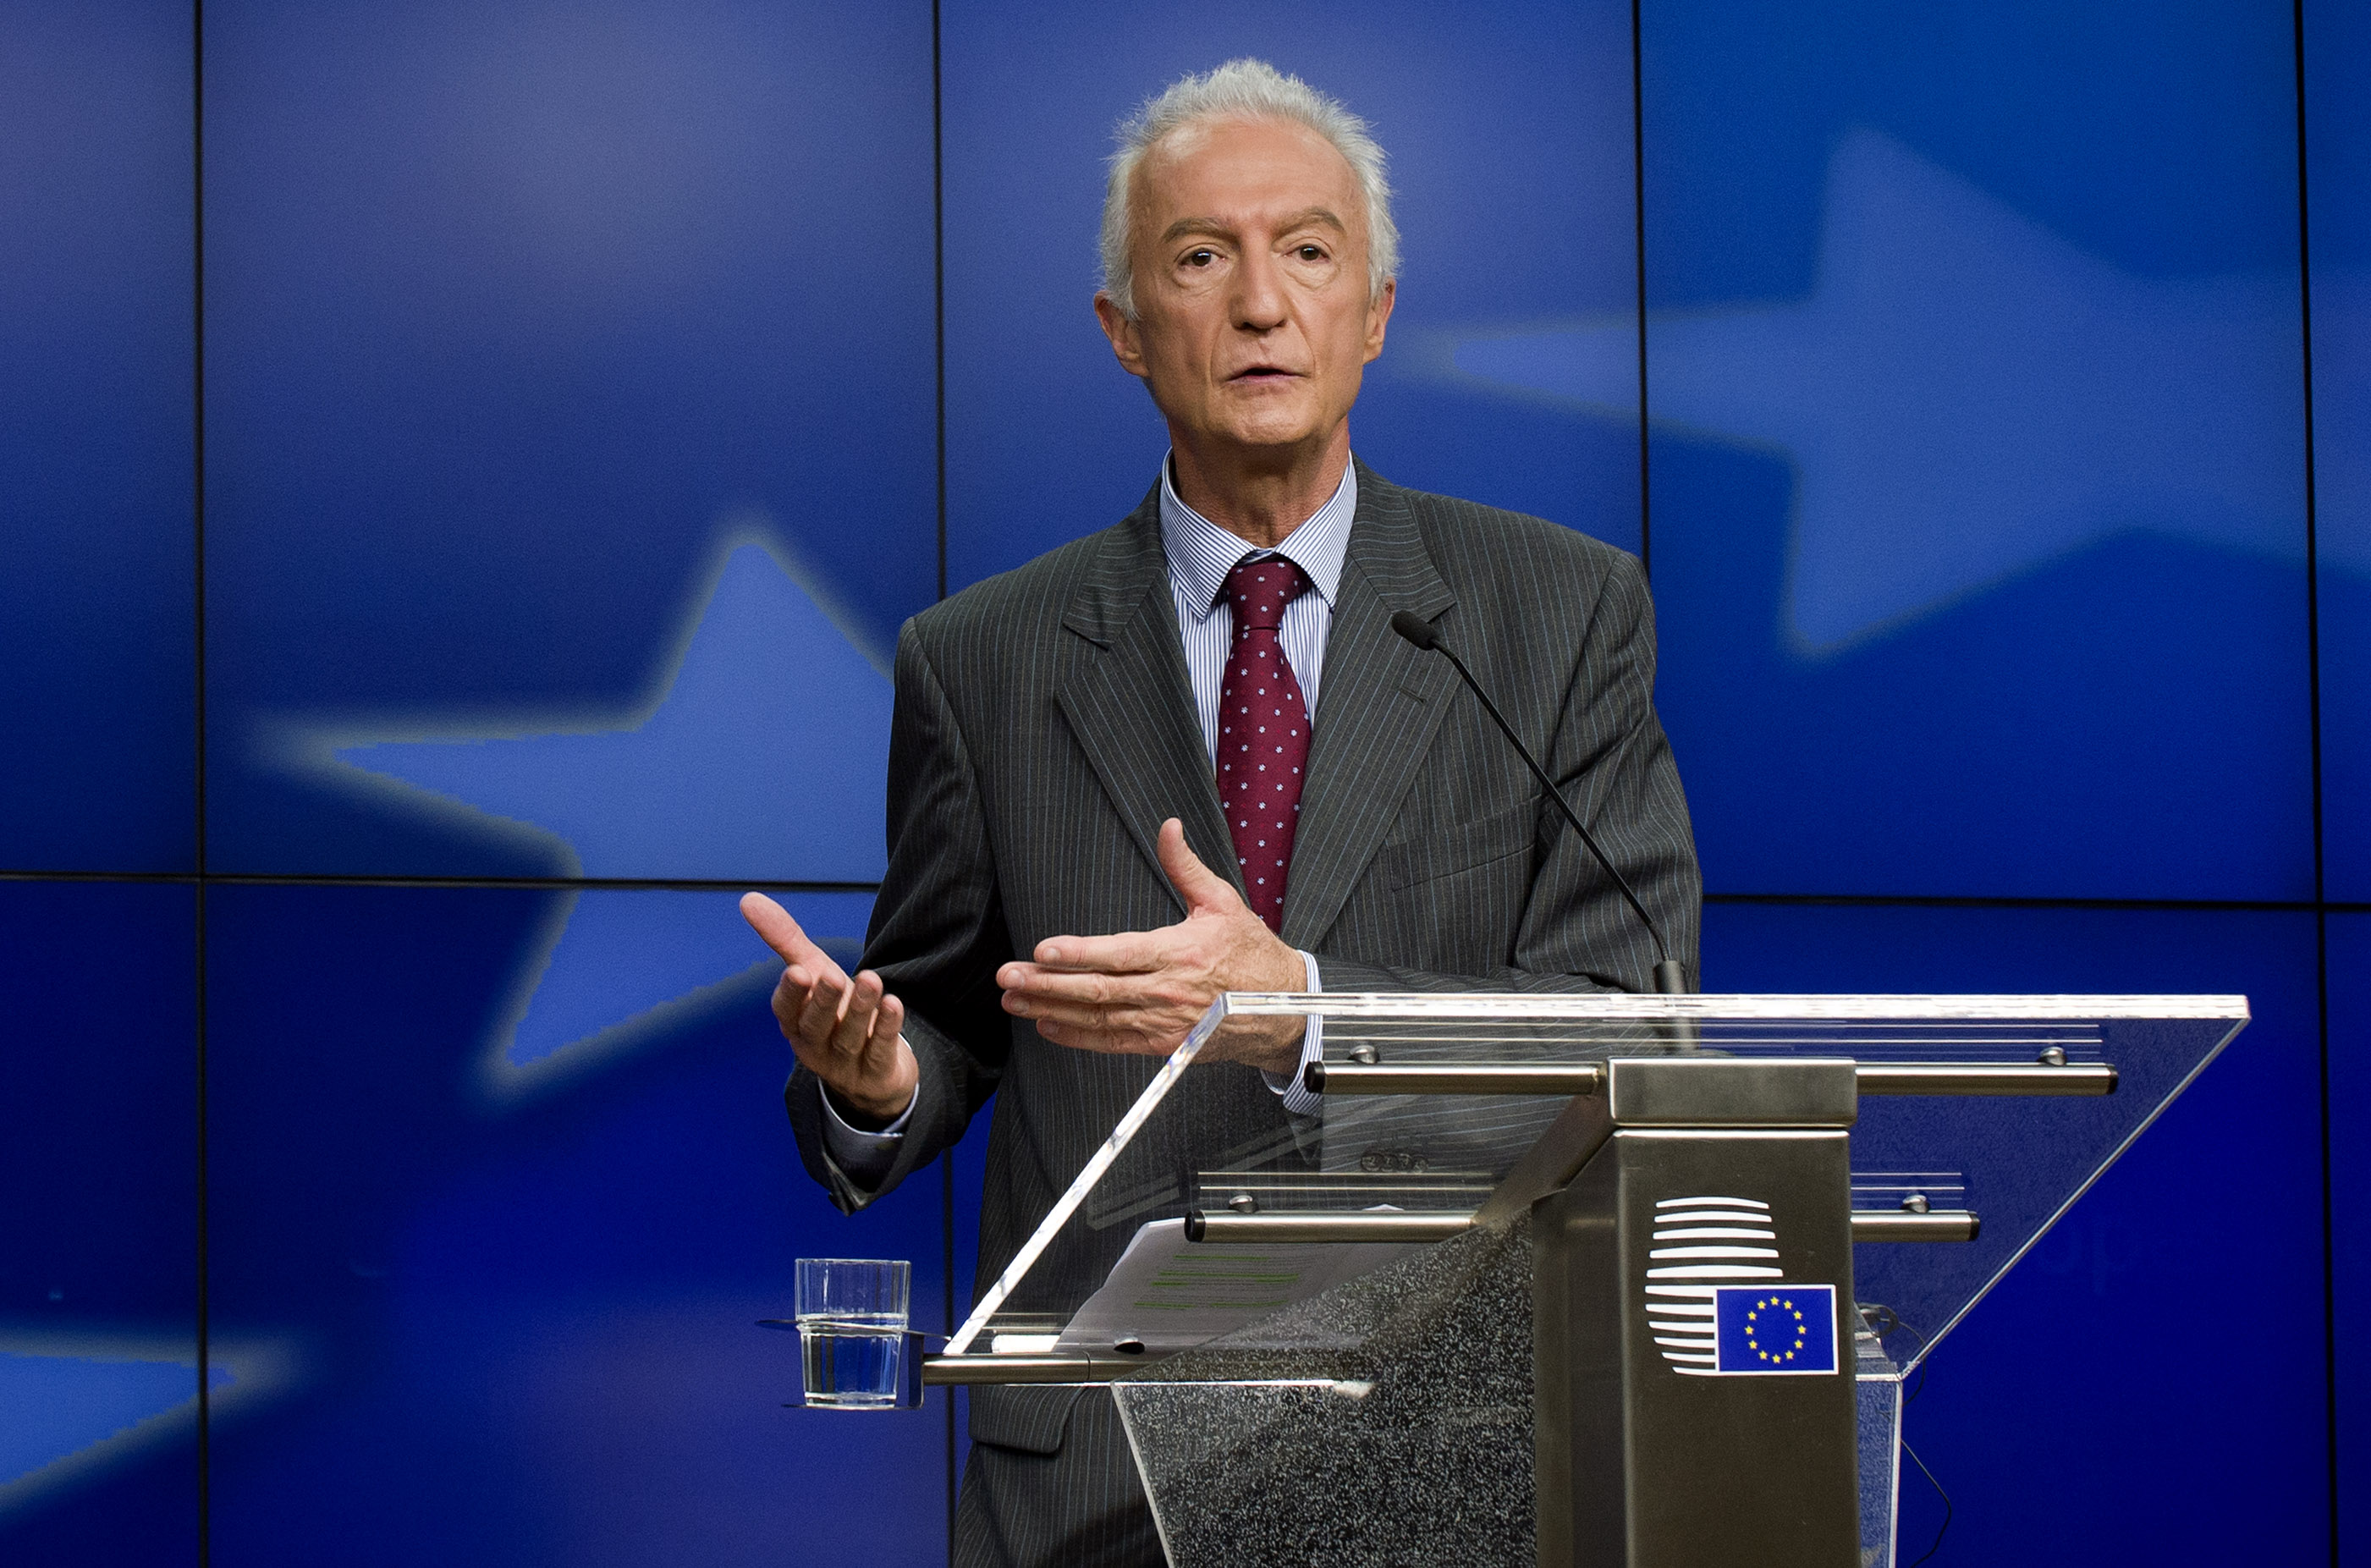 The EU Counter-Terrorism Coordinator Gilles de Kerchove